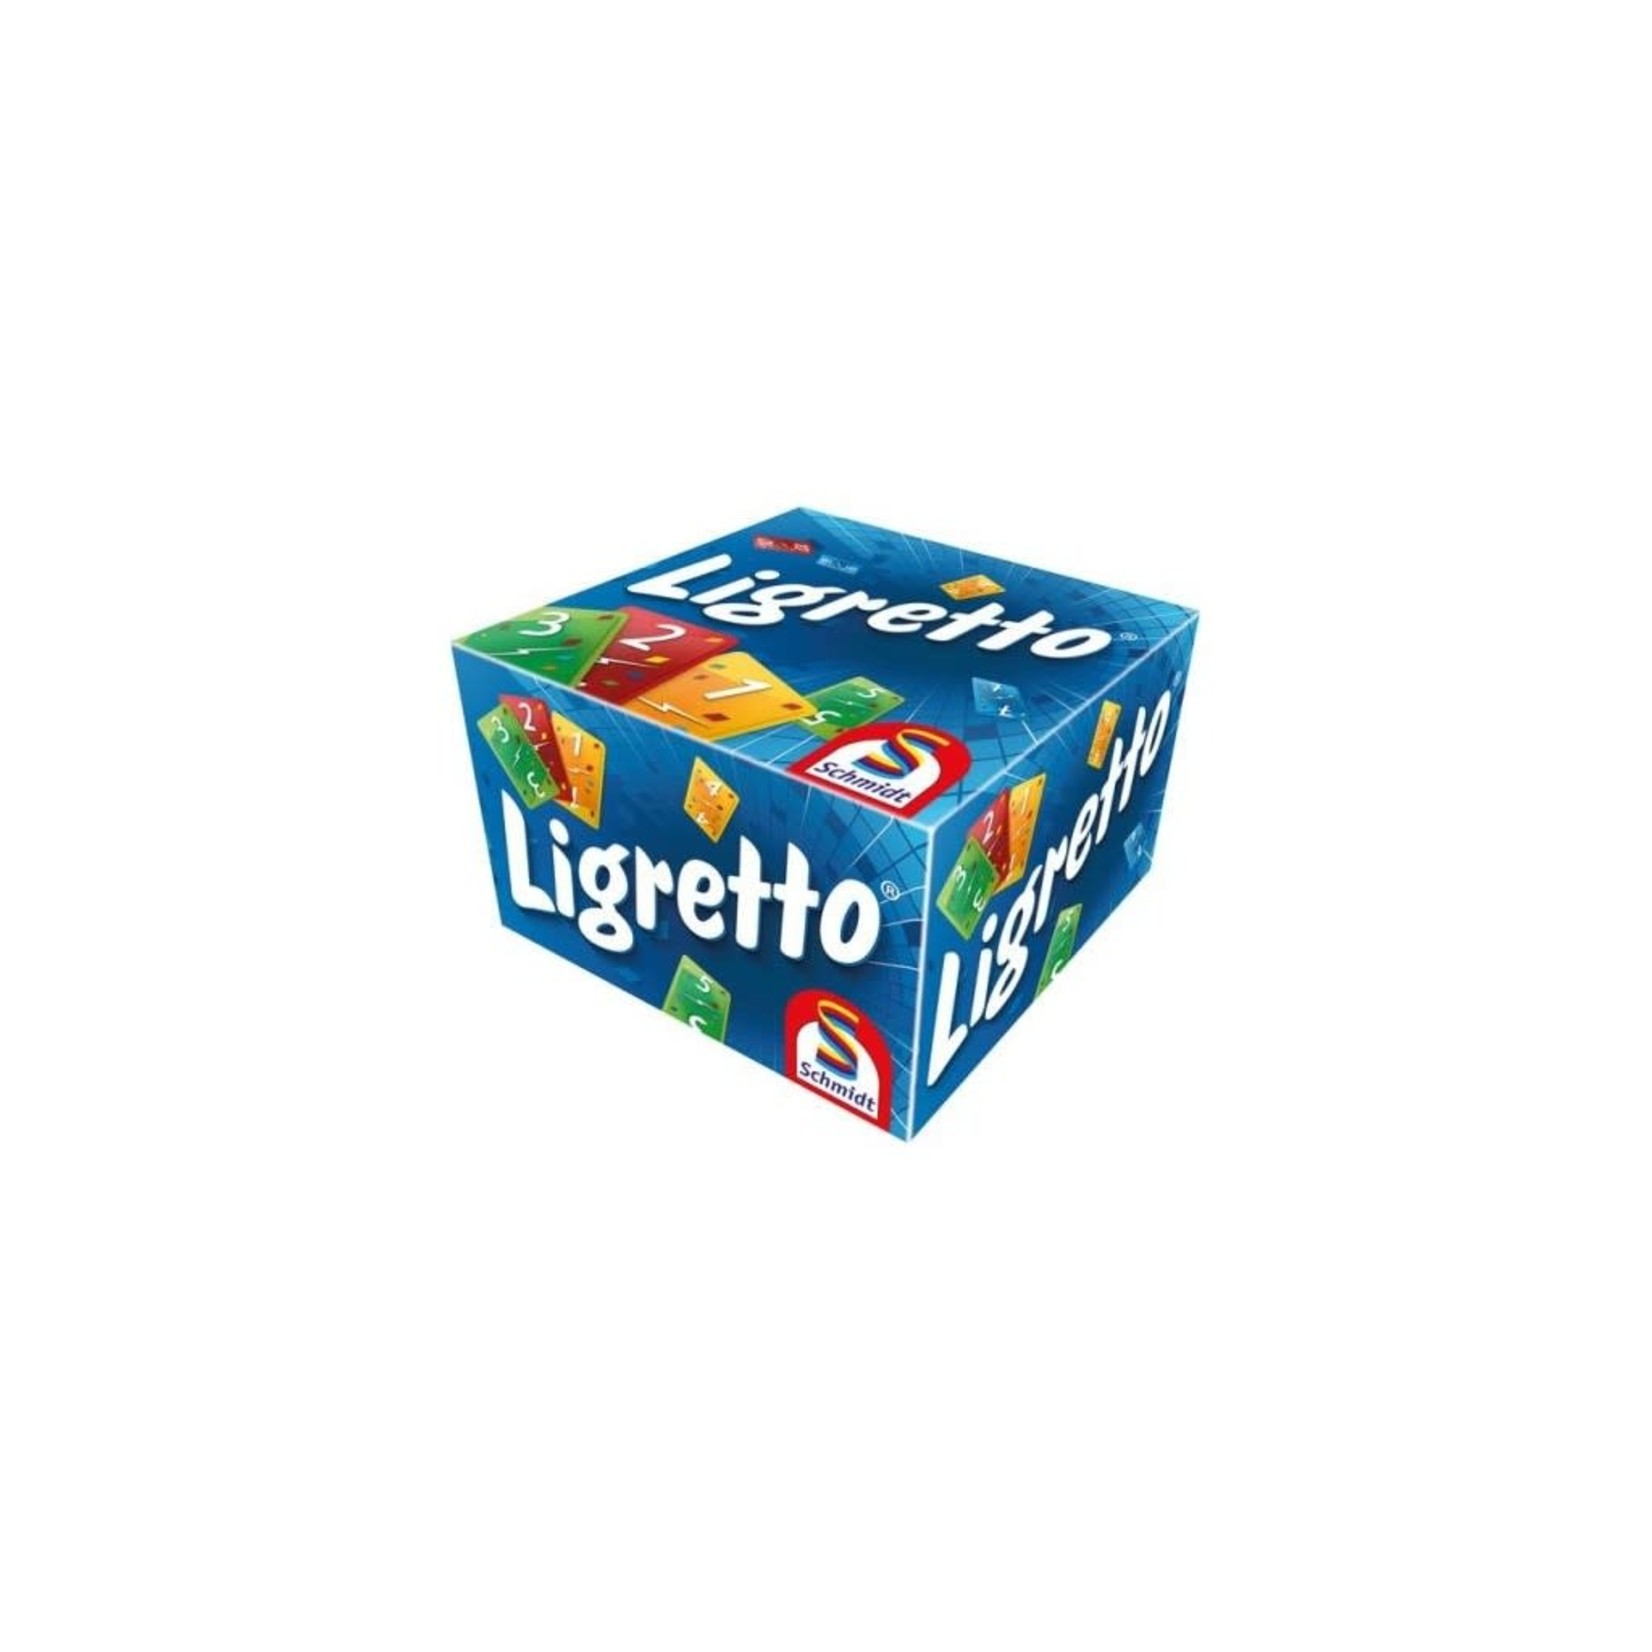 Ligretto bleu - Jeux de société - Acheter sur L'Auberge du Jeu - Suisse